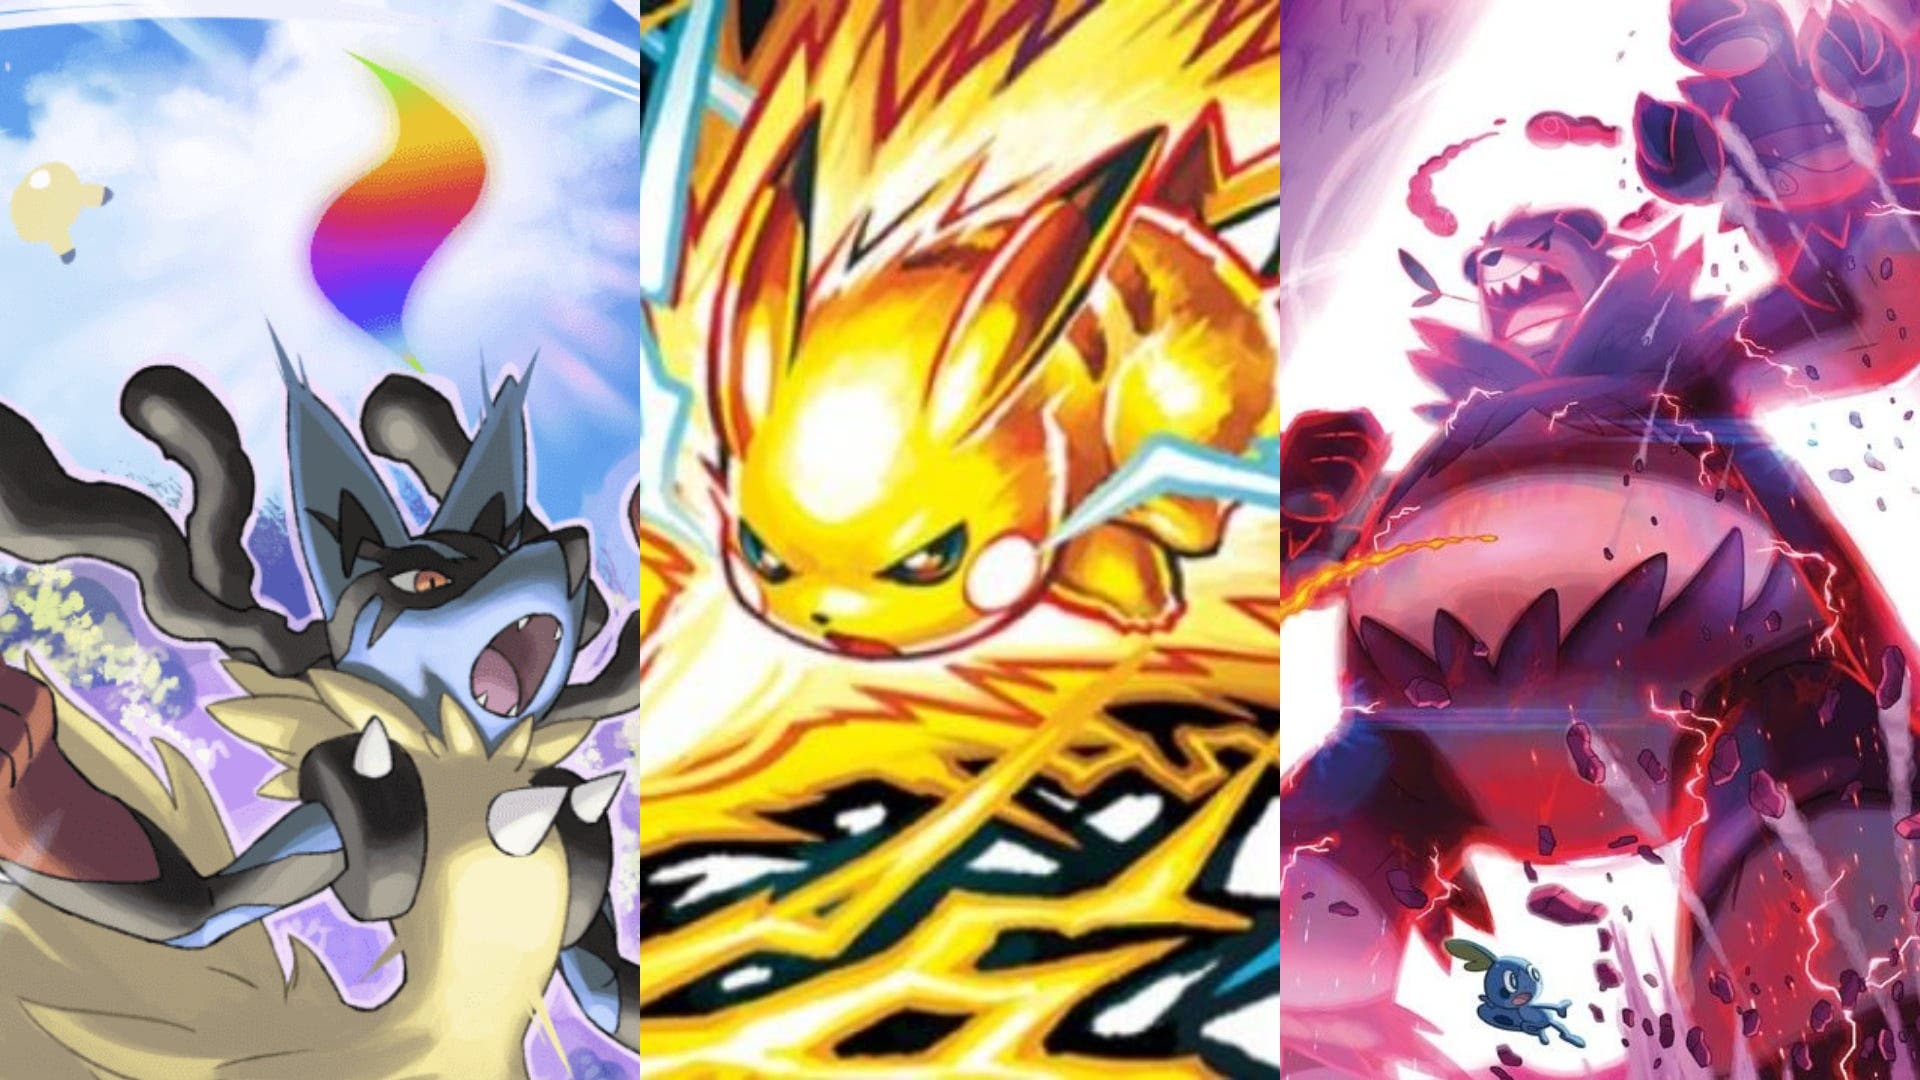 Confirmado: la Megaevolución, los Movimientos Z y el Dinamax / Gigamax conviven en el universo Pokémon